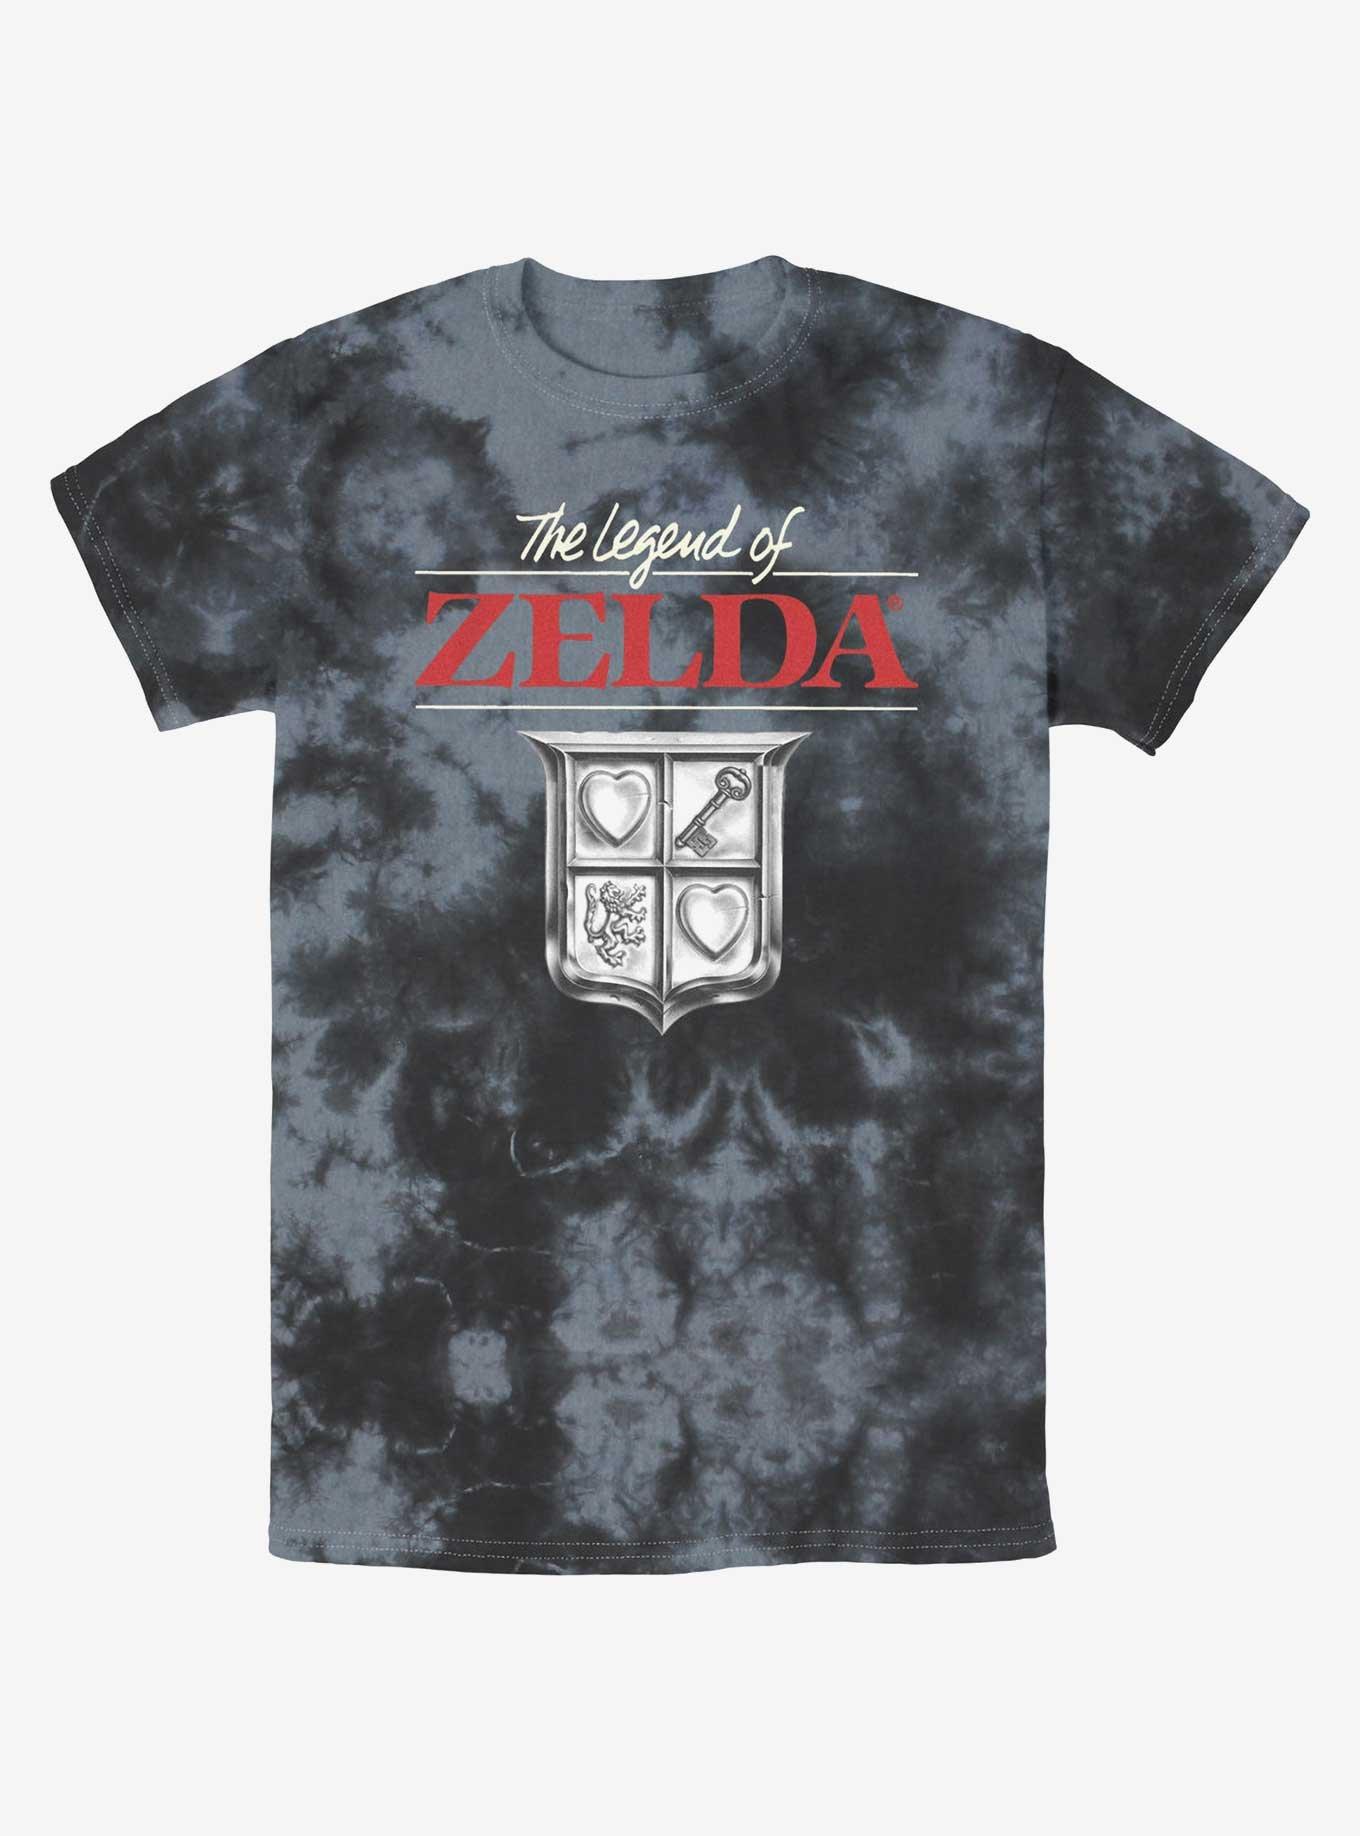 The Legend of Zelda Crest Tie-Dye T-Shirt